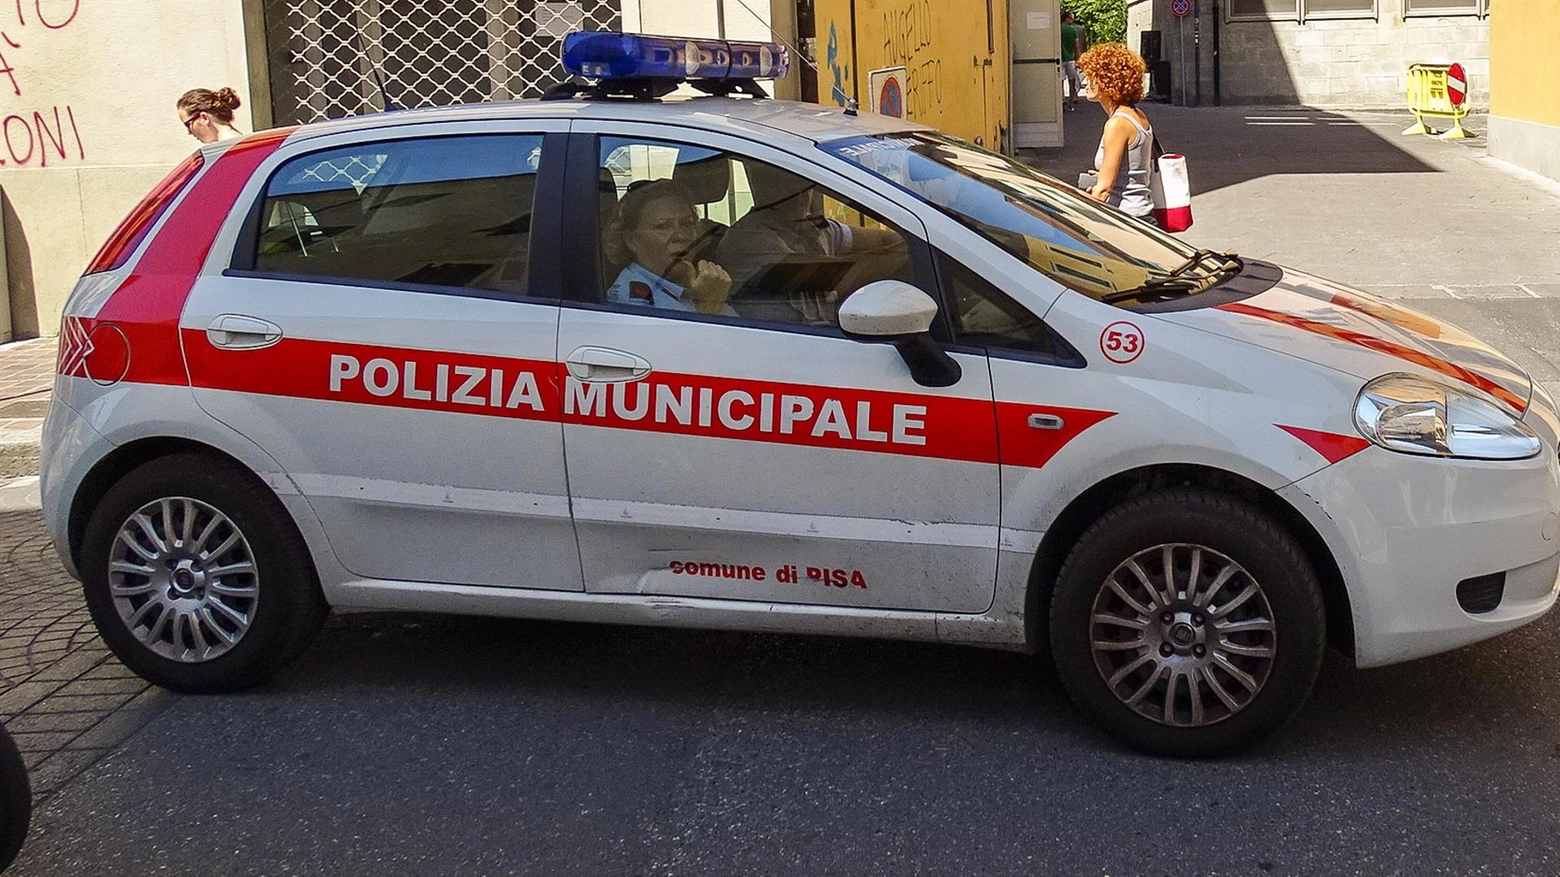 Polizia Municipale (Foto di repertorio)